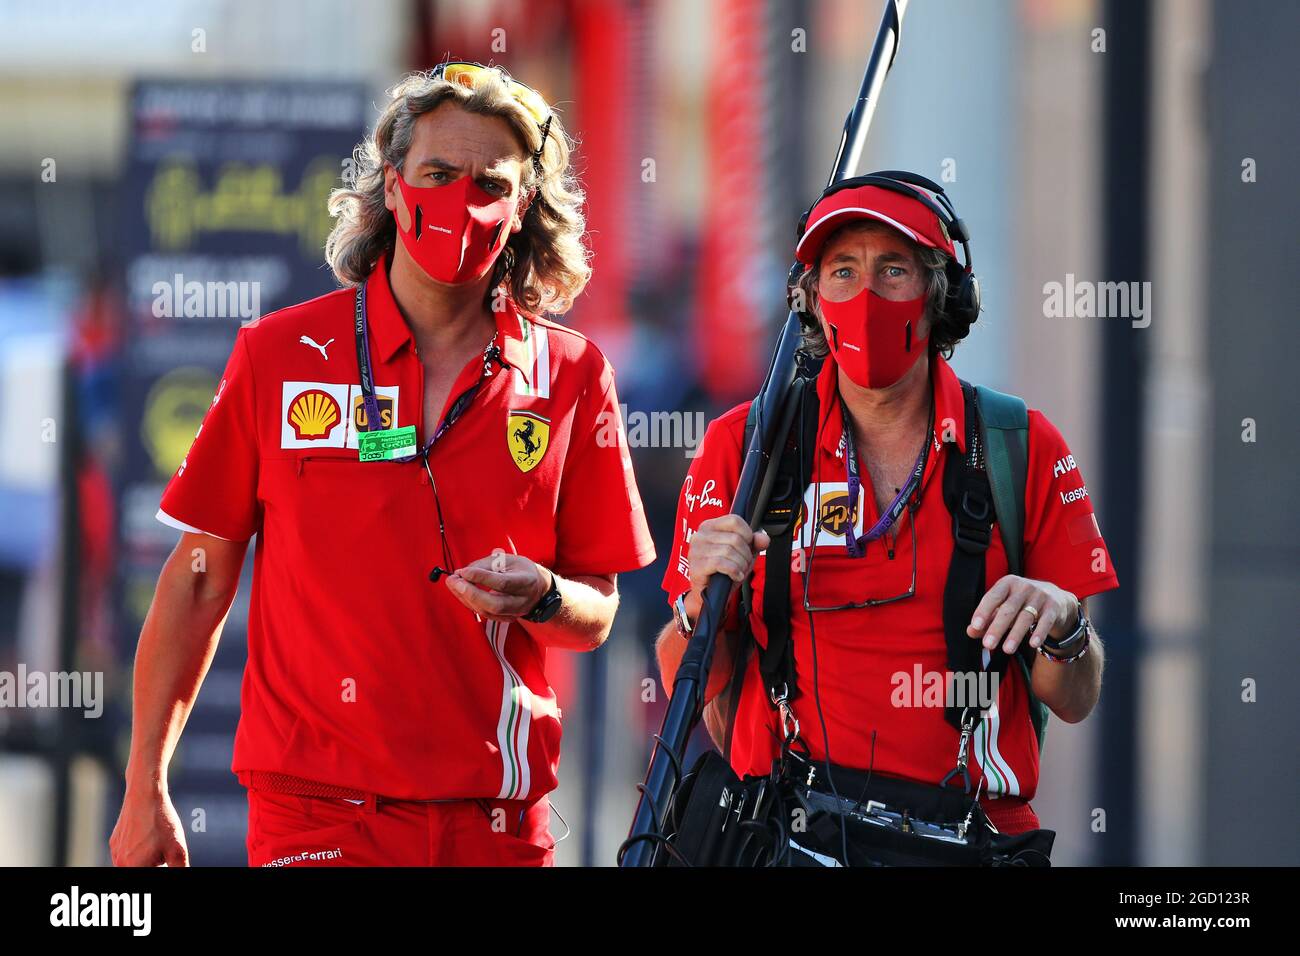 Ferrari. Italian Grand Prix, Thursday 3rd September 2020. Monza Italy. Stock Photo